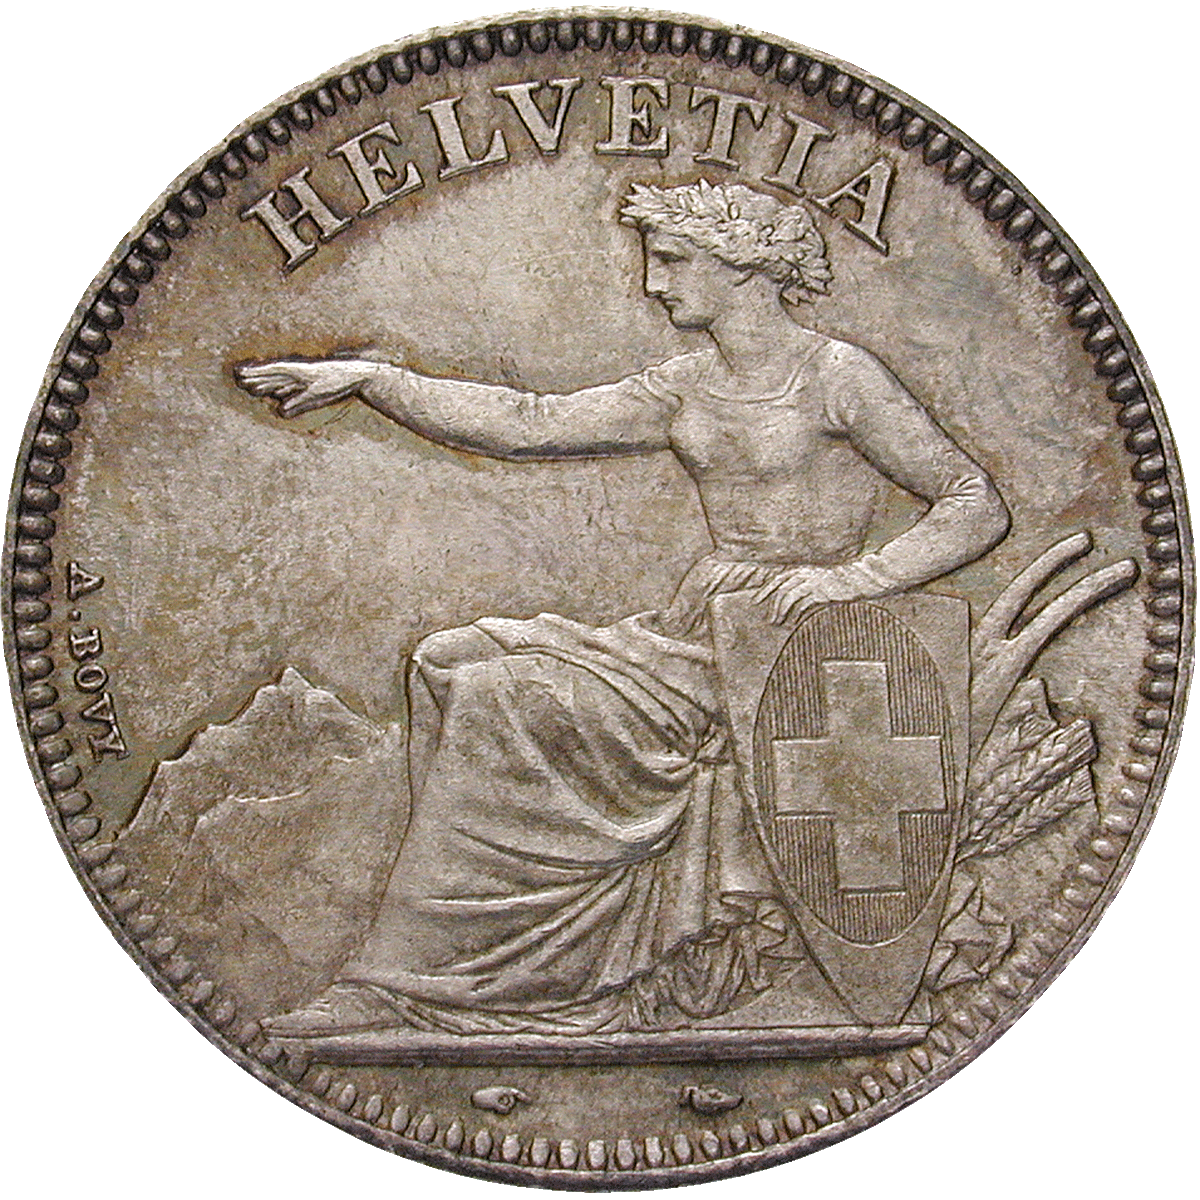 Swiss Confederation, 2 Francs 1850 (obverse)